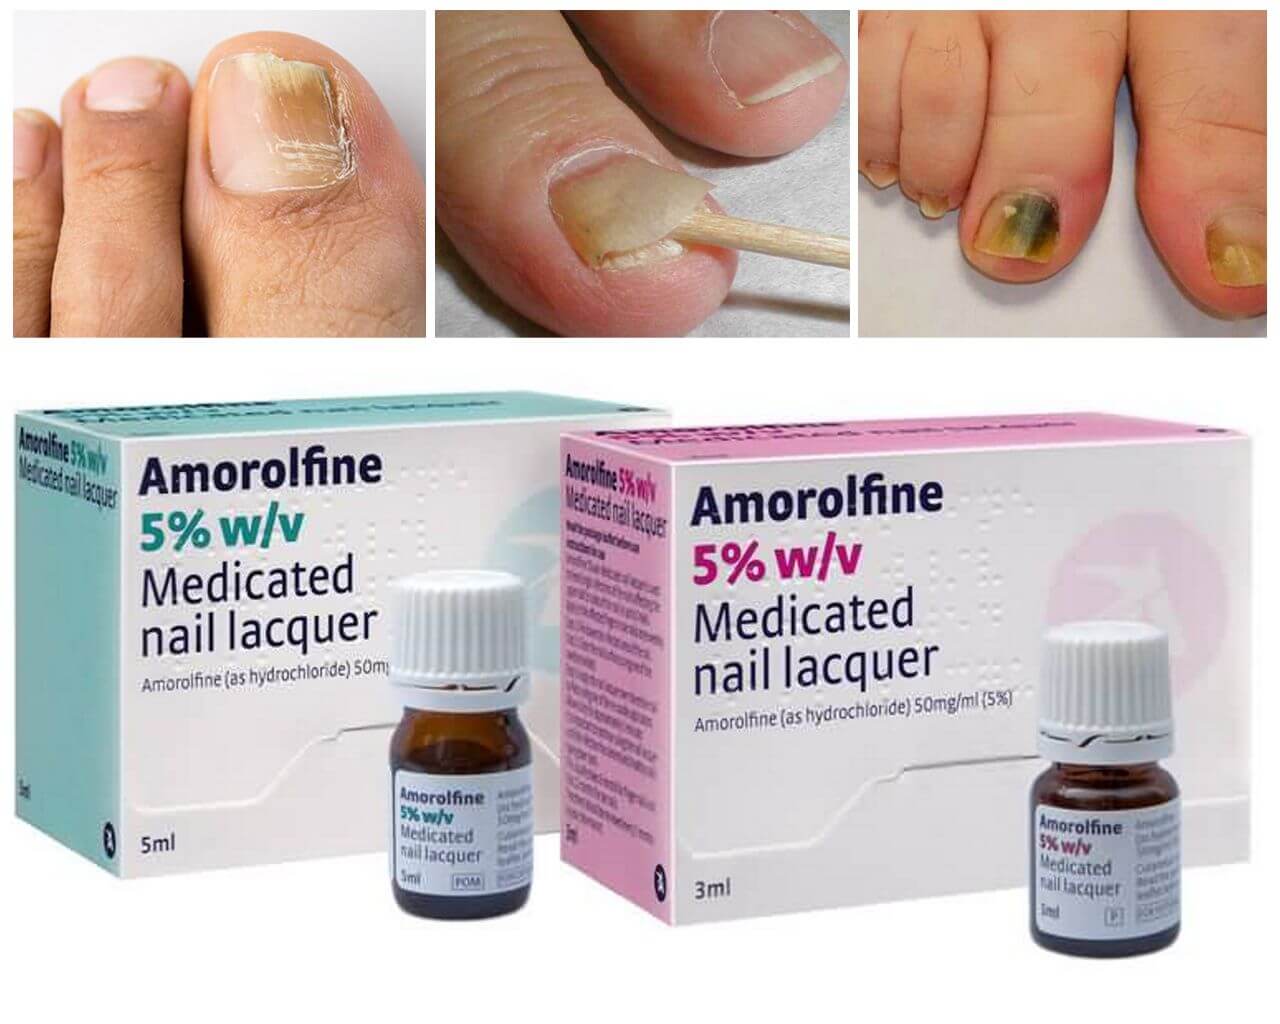 Недорогие и эффективные лаки от грибка ногтей: обзор лечебных препаратов, отзывы